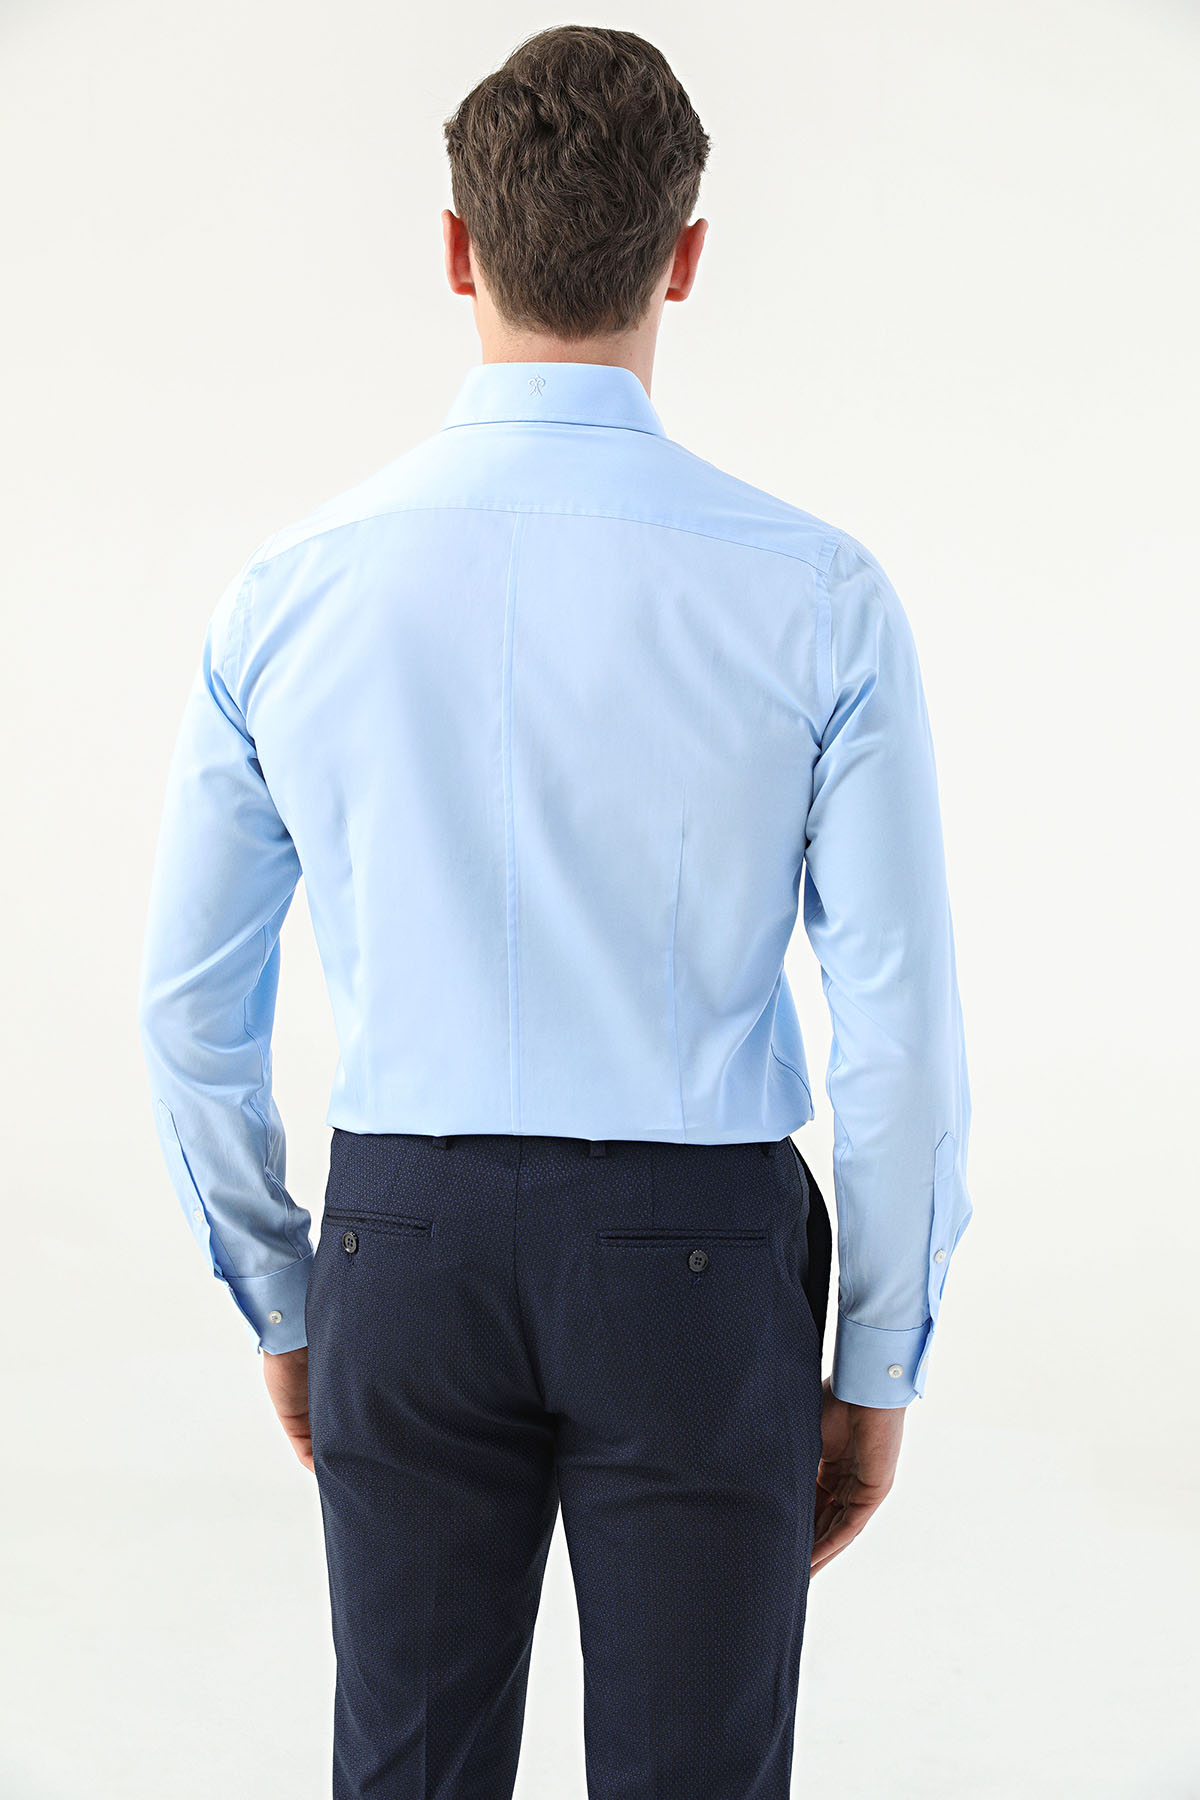 Damat Tween Damat Slim Fit Açık Mavi Düz Gömlek. 5